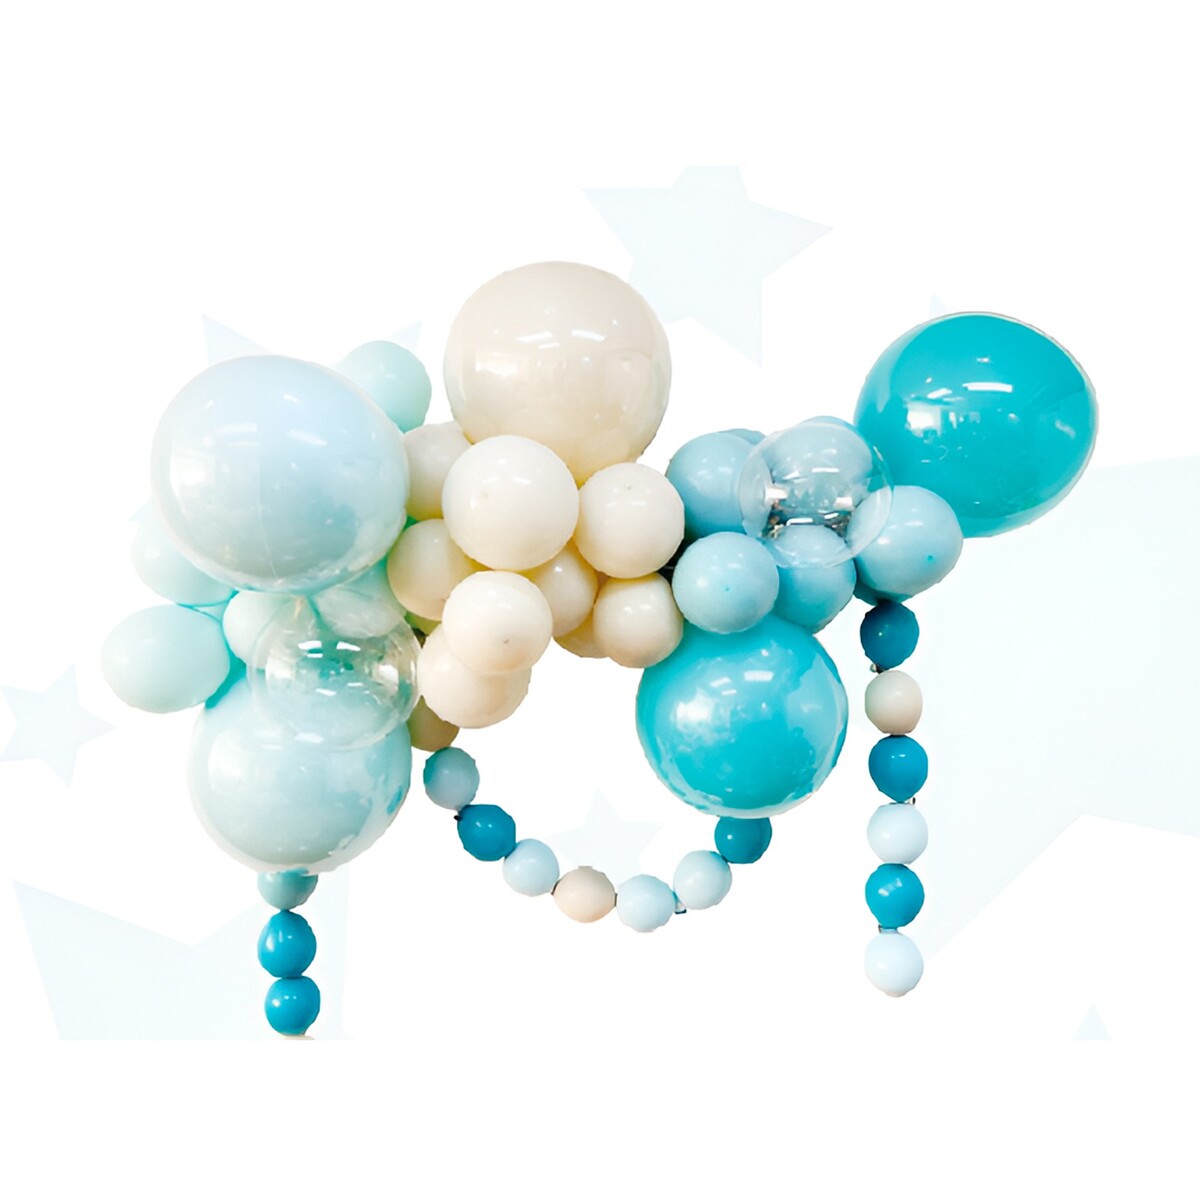 Набор для создания композиций из воздушных шаров, набор 52 шт., голубой, песок, бирюза эмаль казачка пф 115 пром бирюза 6 кг